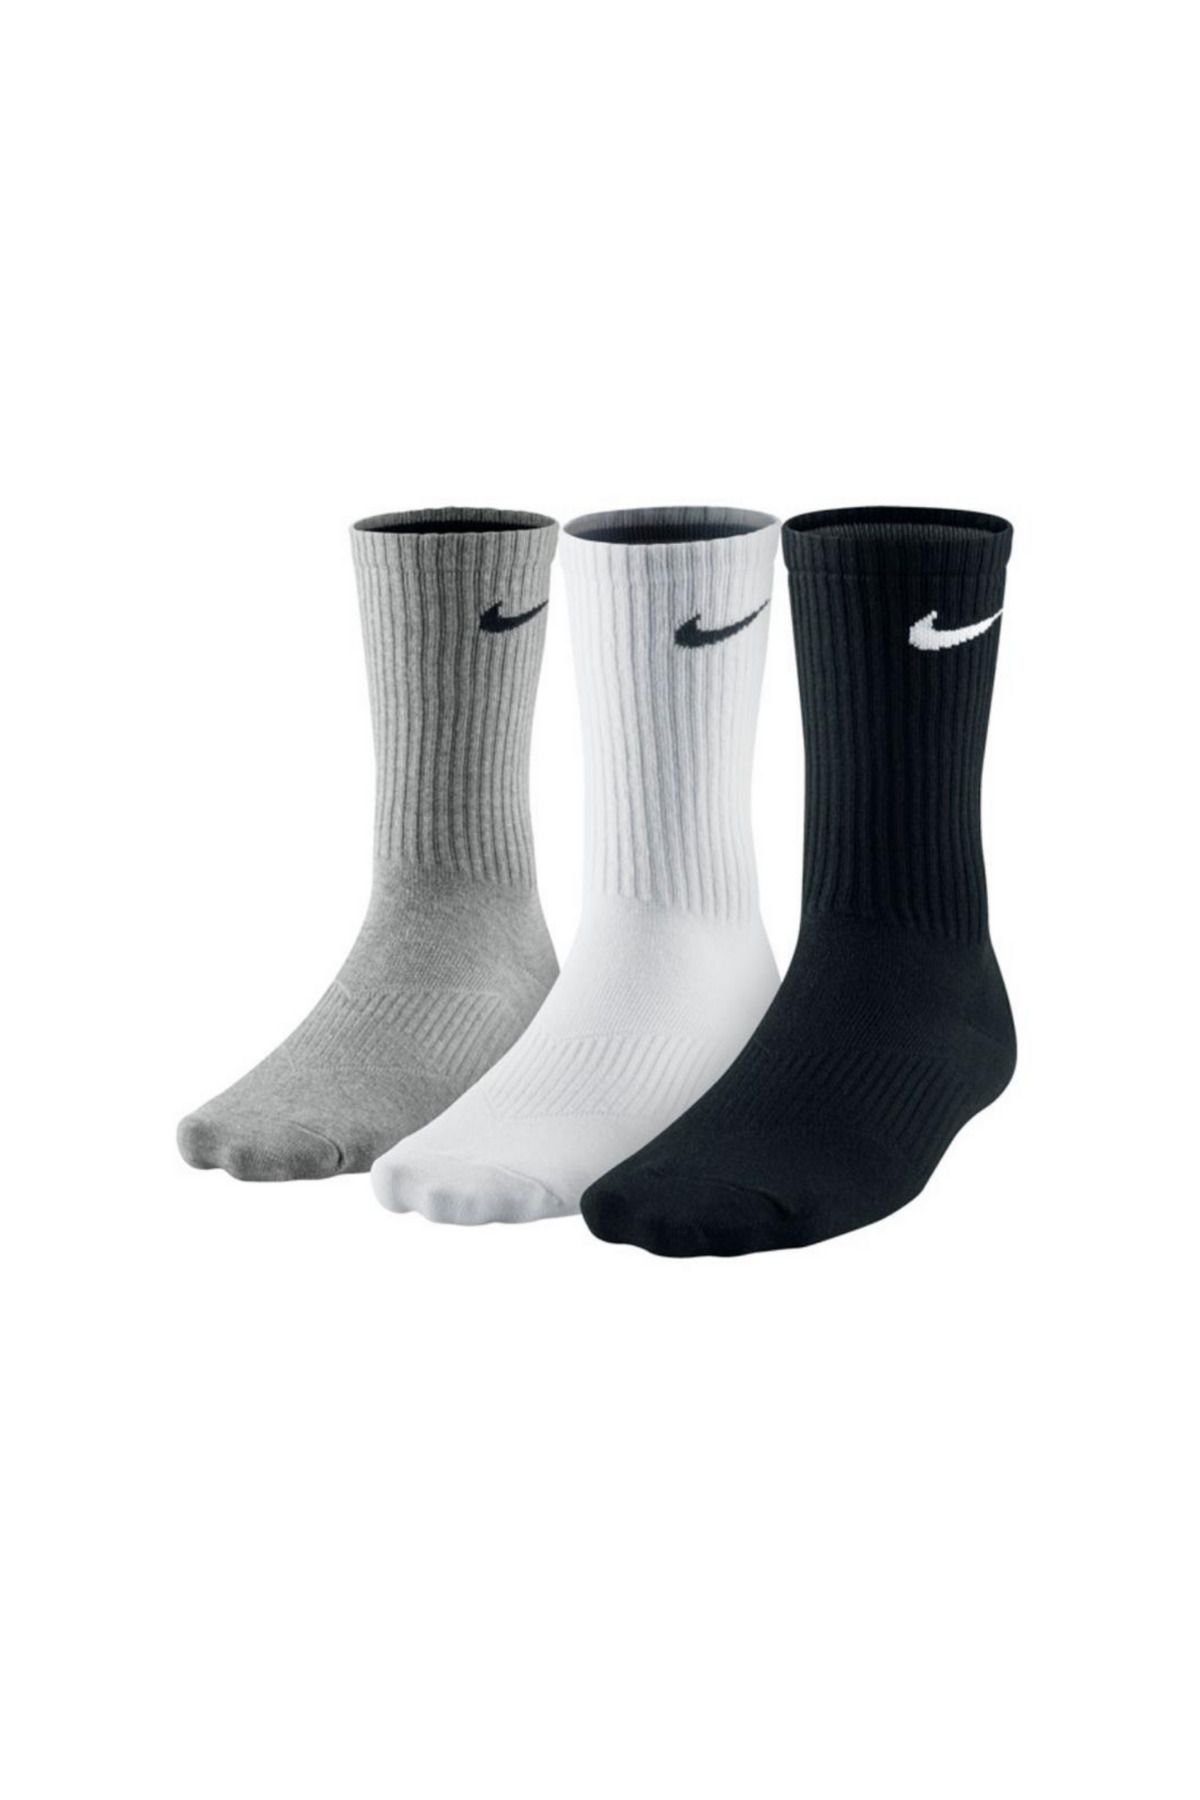 Socks Sirius Unısex Fitilli Yüksek Kalite Dikişsiz Siyah Beyaz Gri Renkli 3'lü Antrenman Ve Spor Çorap